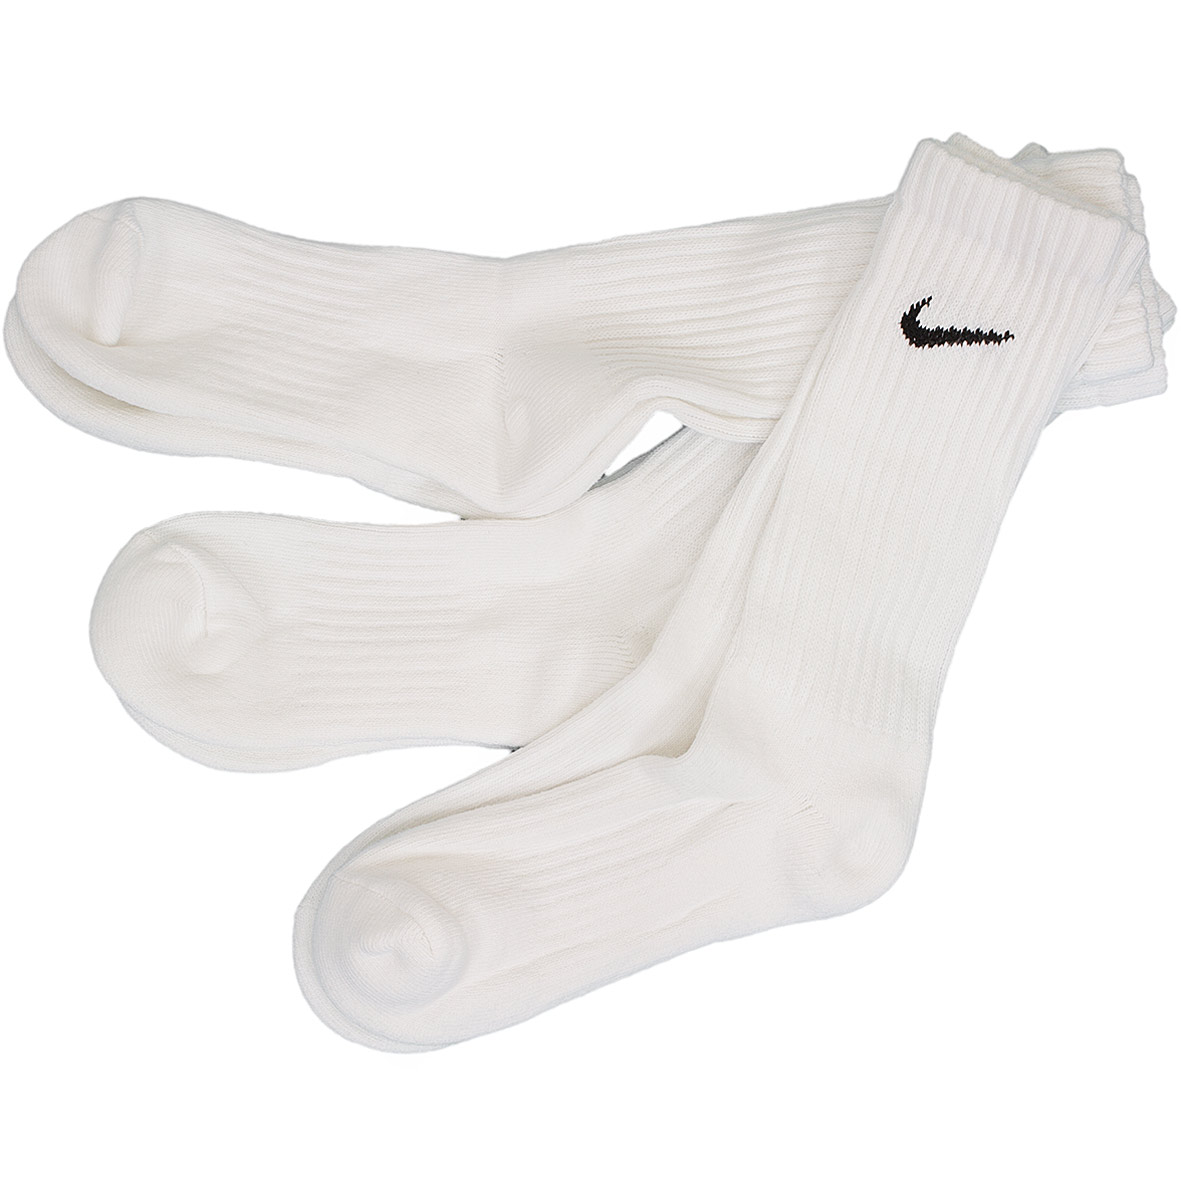 ☆ Nike Socken Value Cotton Crew (3er Pack) weiß/schwarz - hier bestellen!